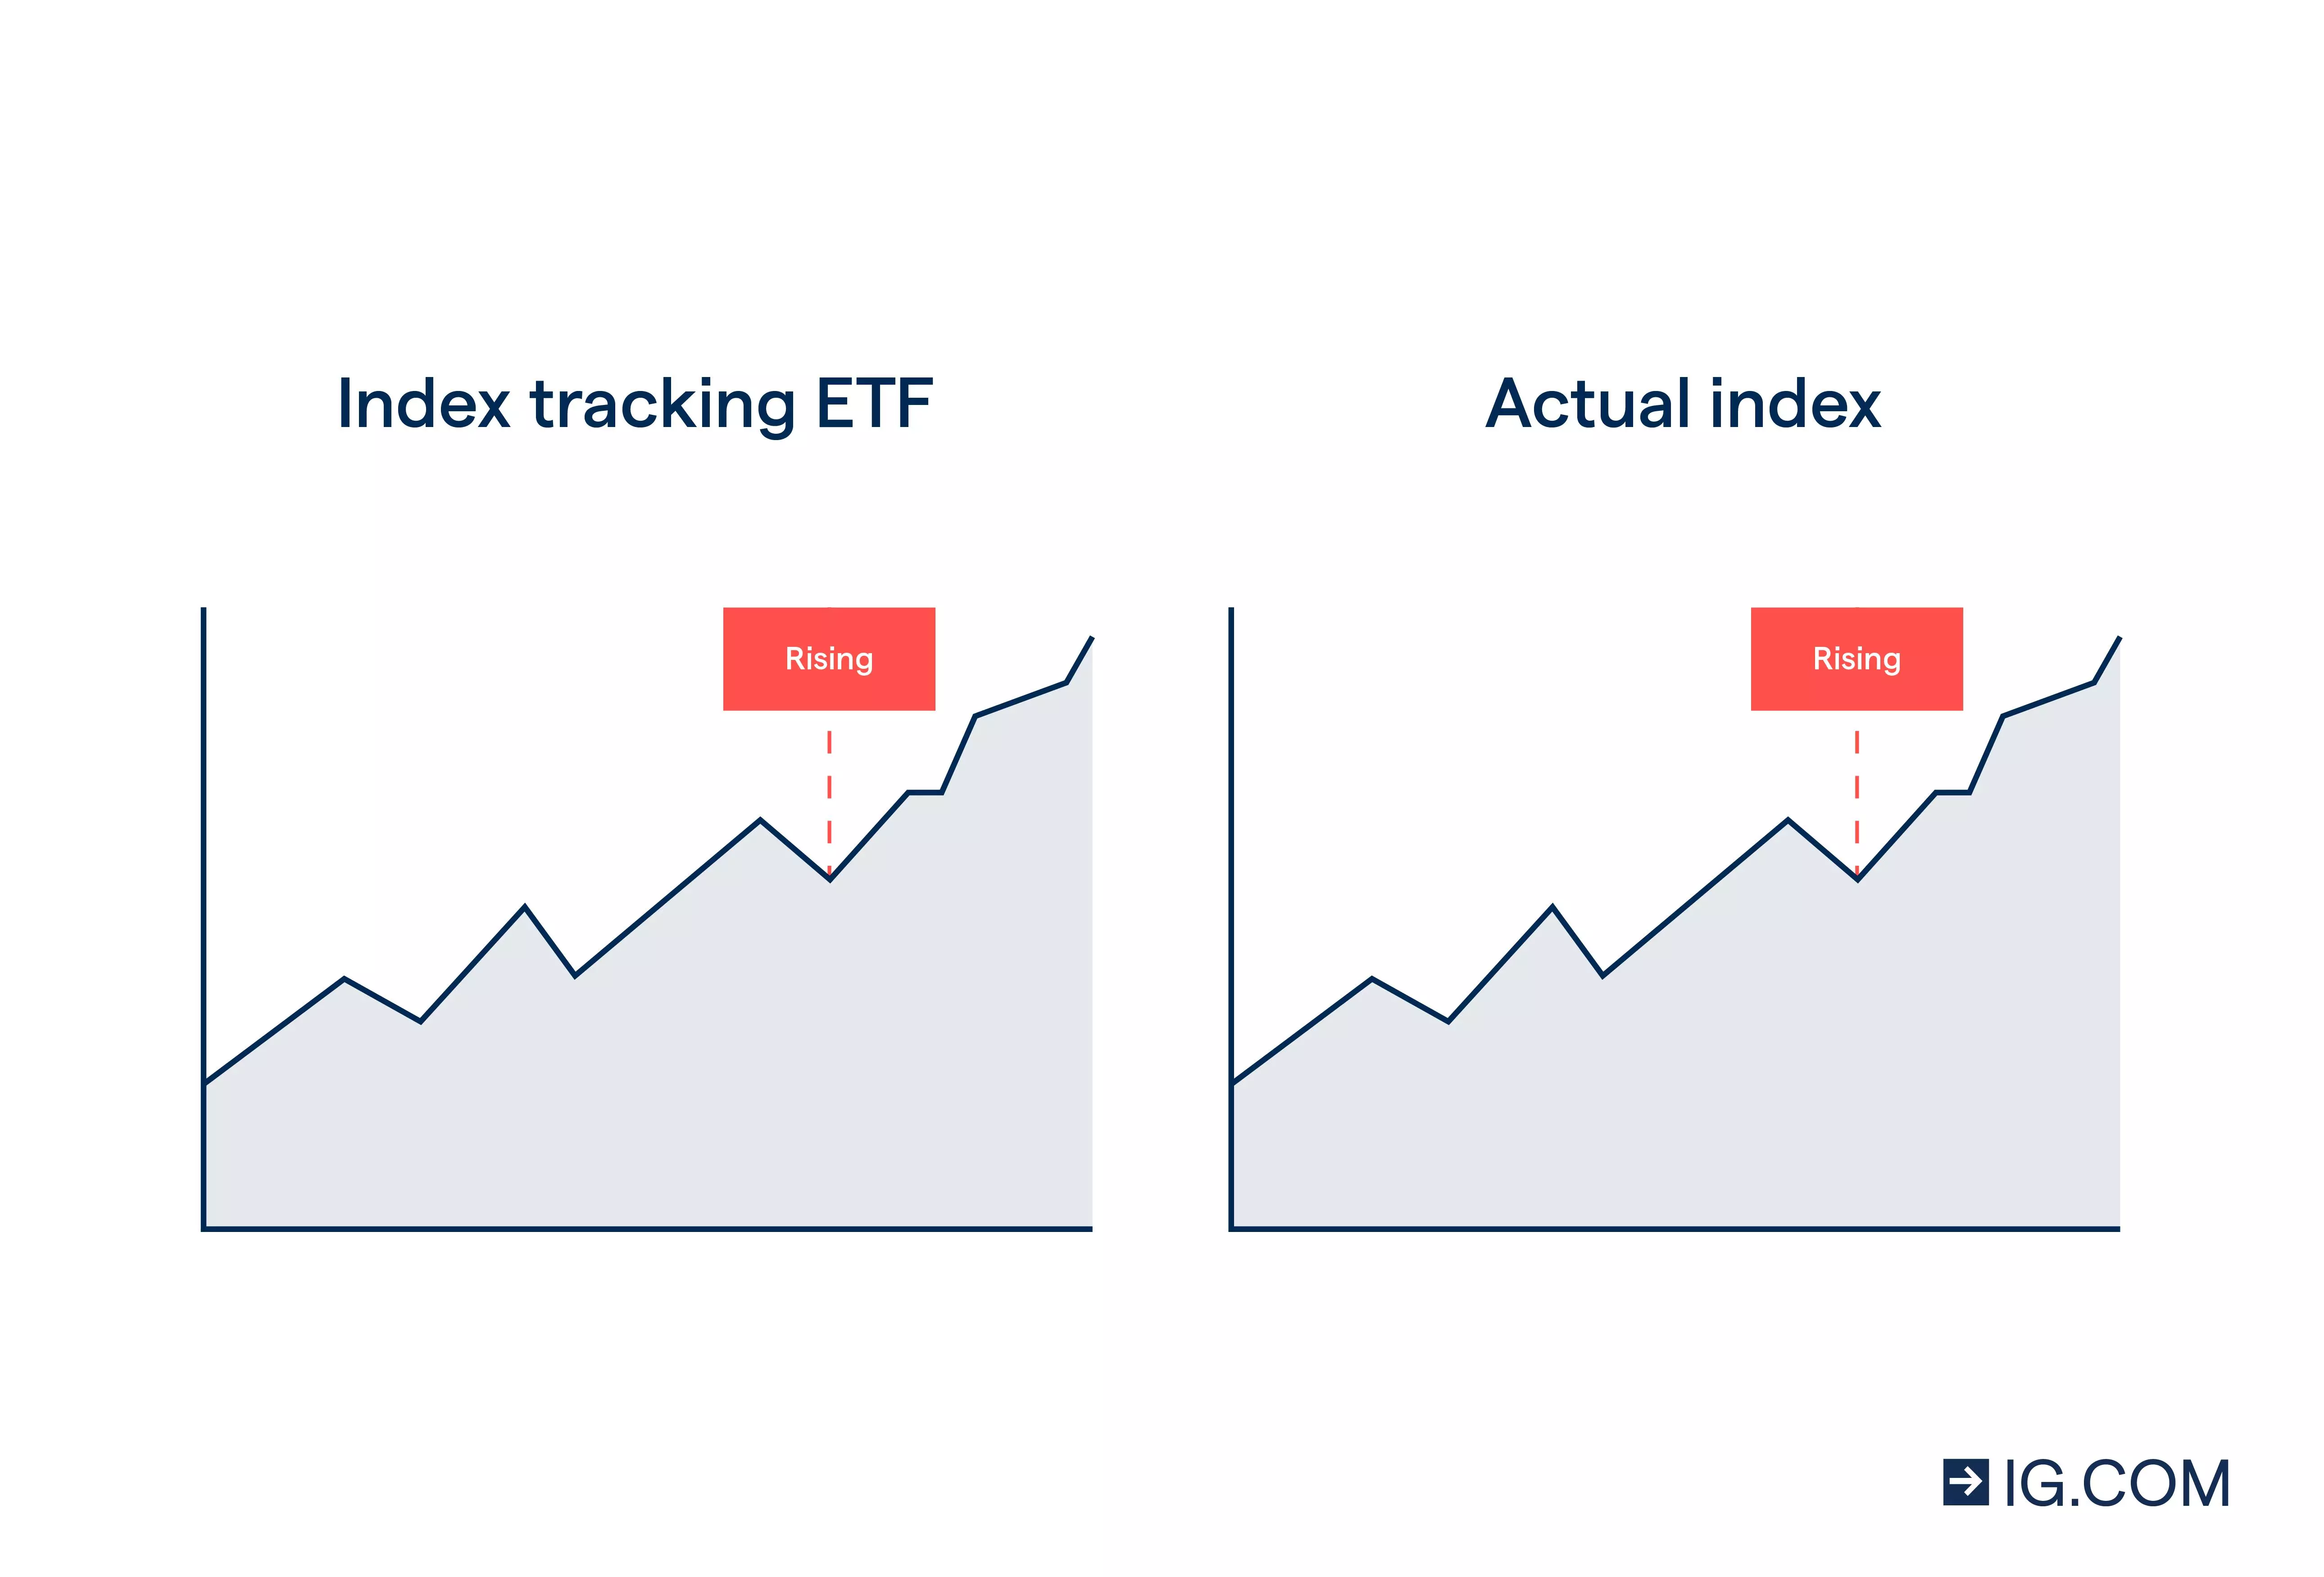 Index tracking EFT vs actual index